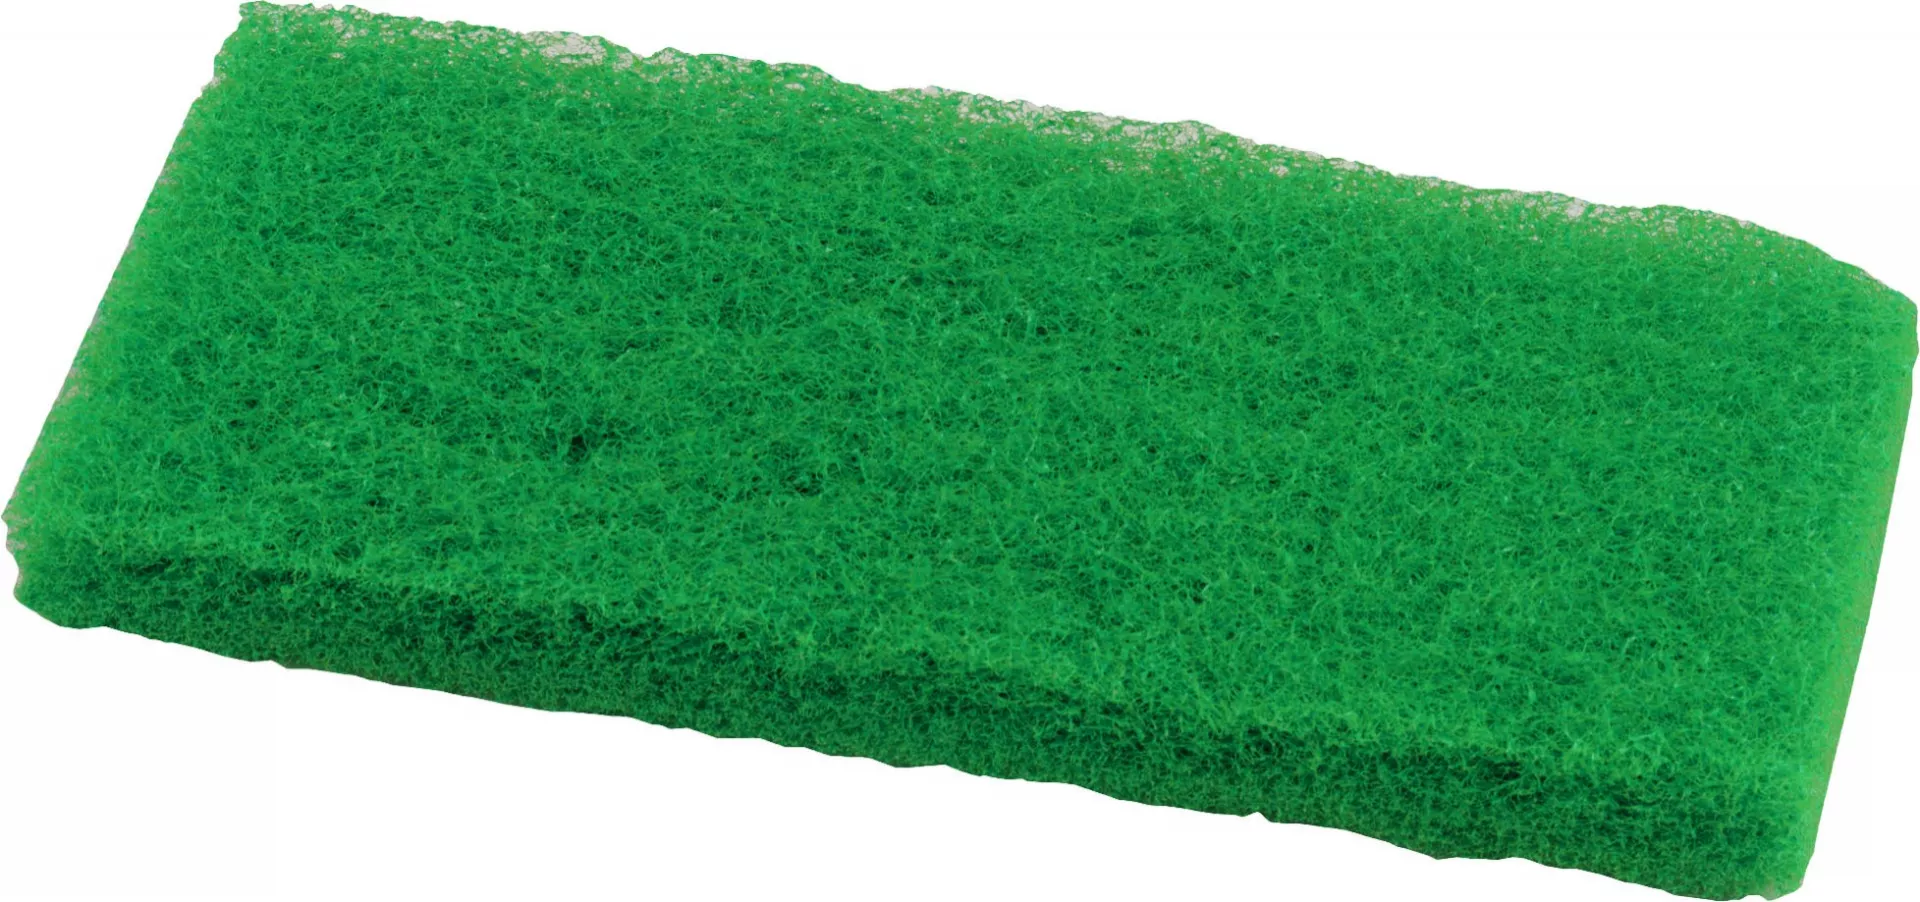 Блок абразивный Schavon, средний (зеленый цвет), 245x125 мм